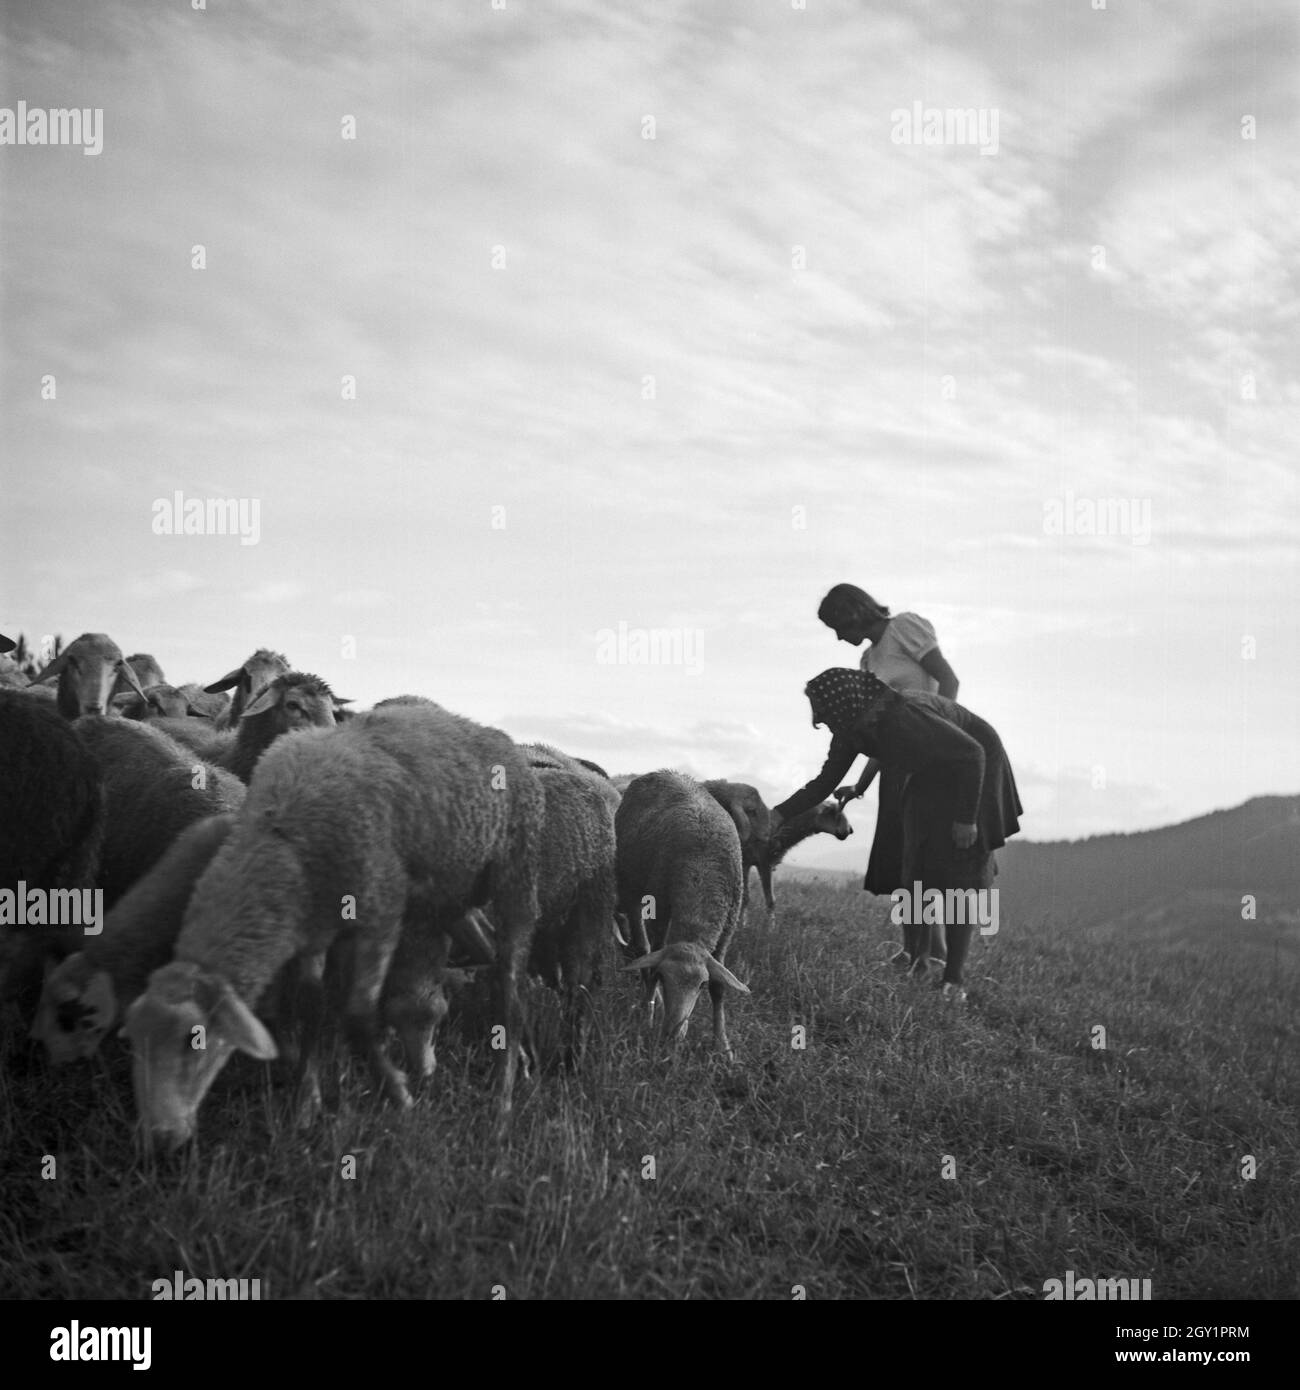 Zwei junge Frauen spielen auf einer Alm mit Schafen, Deutschland 1930er Jahre. Zwei junge Frauen und ein Hirte spielen mit ein kleines Lamm auf einem Rasen, Deutschland 1930. Stockfoto